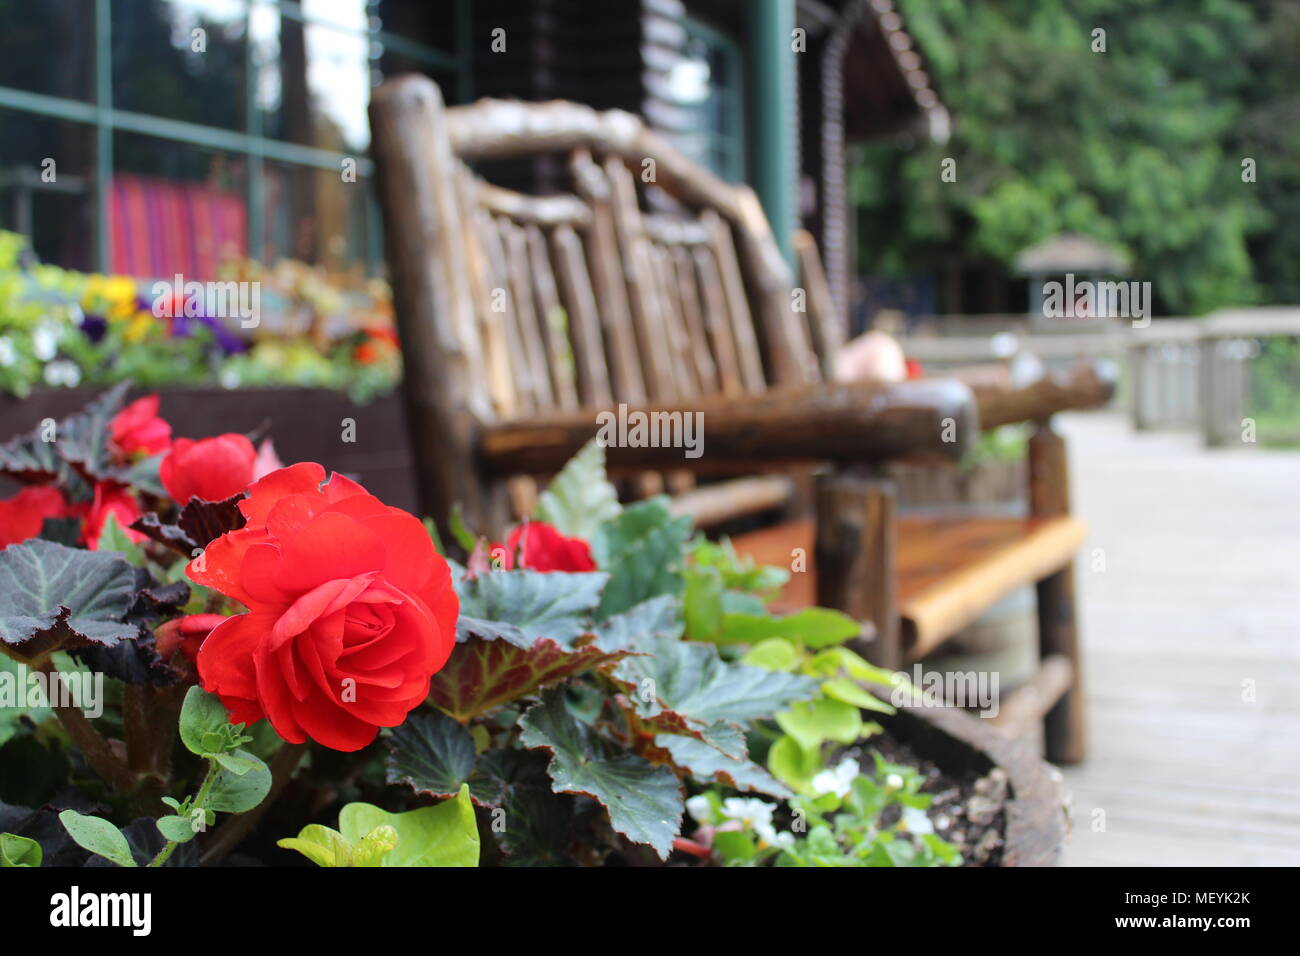 Rosas rojas con hojas verdes en una maceta junto a un banco de madera rústica Foto de stock